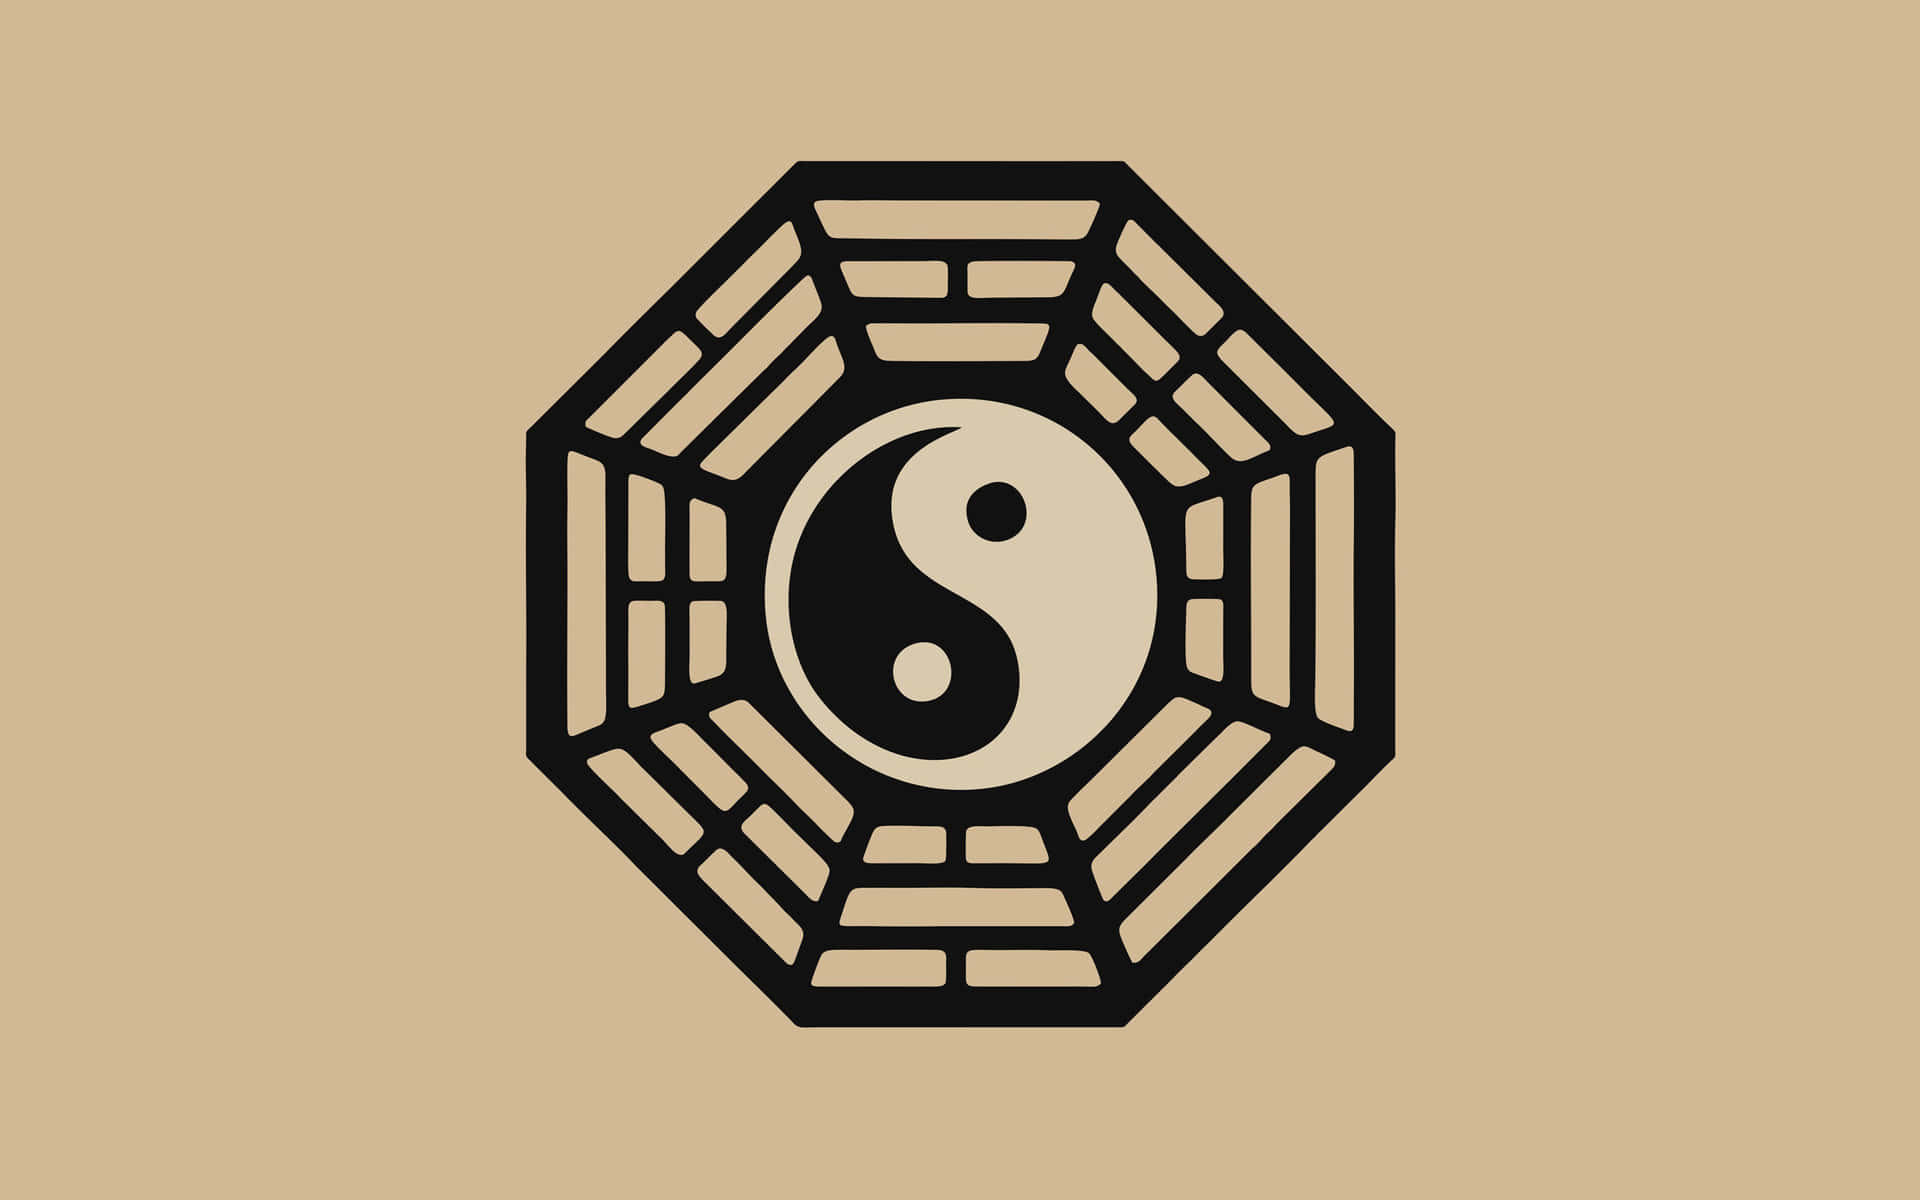 Kinesiskayin Yang Bagua-symbolen I 4k Upplösning. Wallpaper